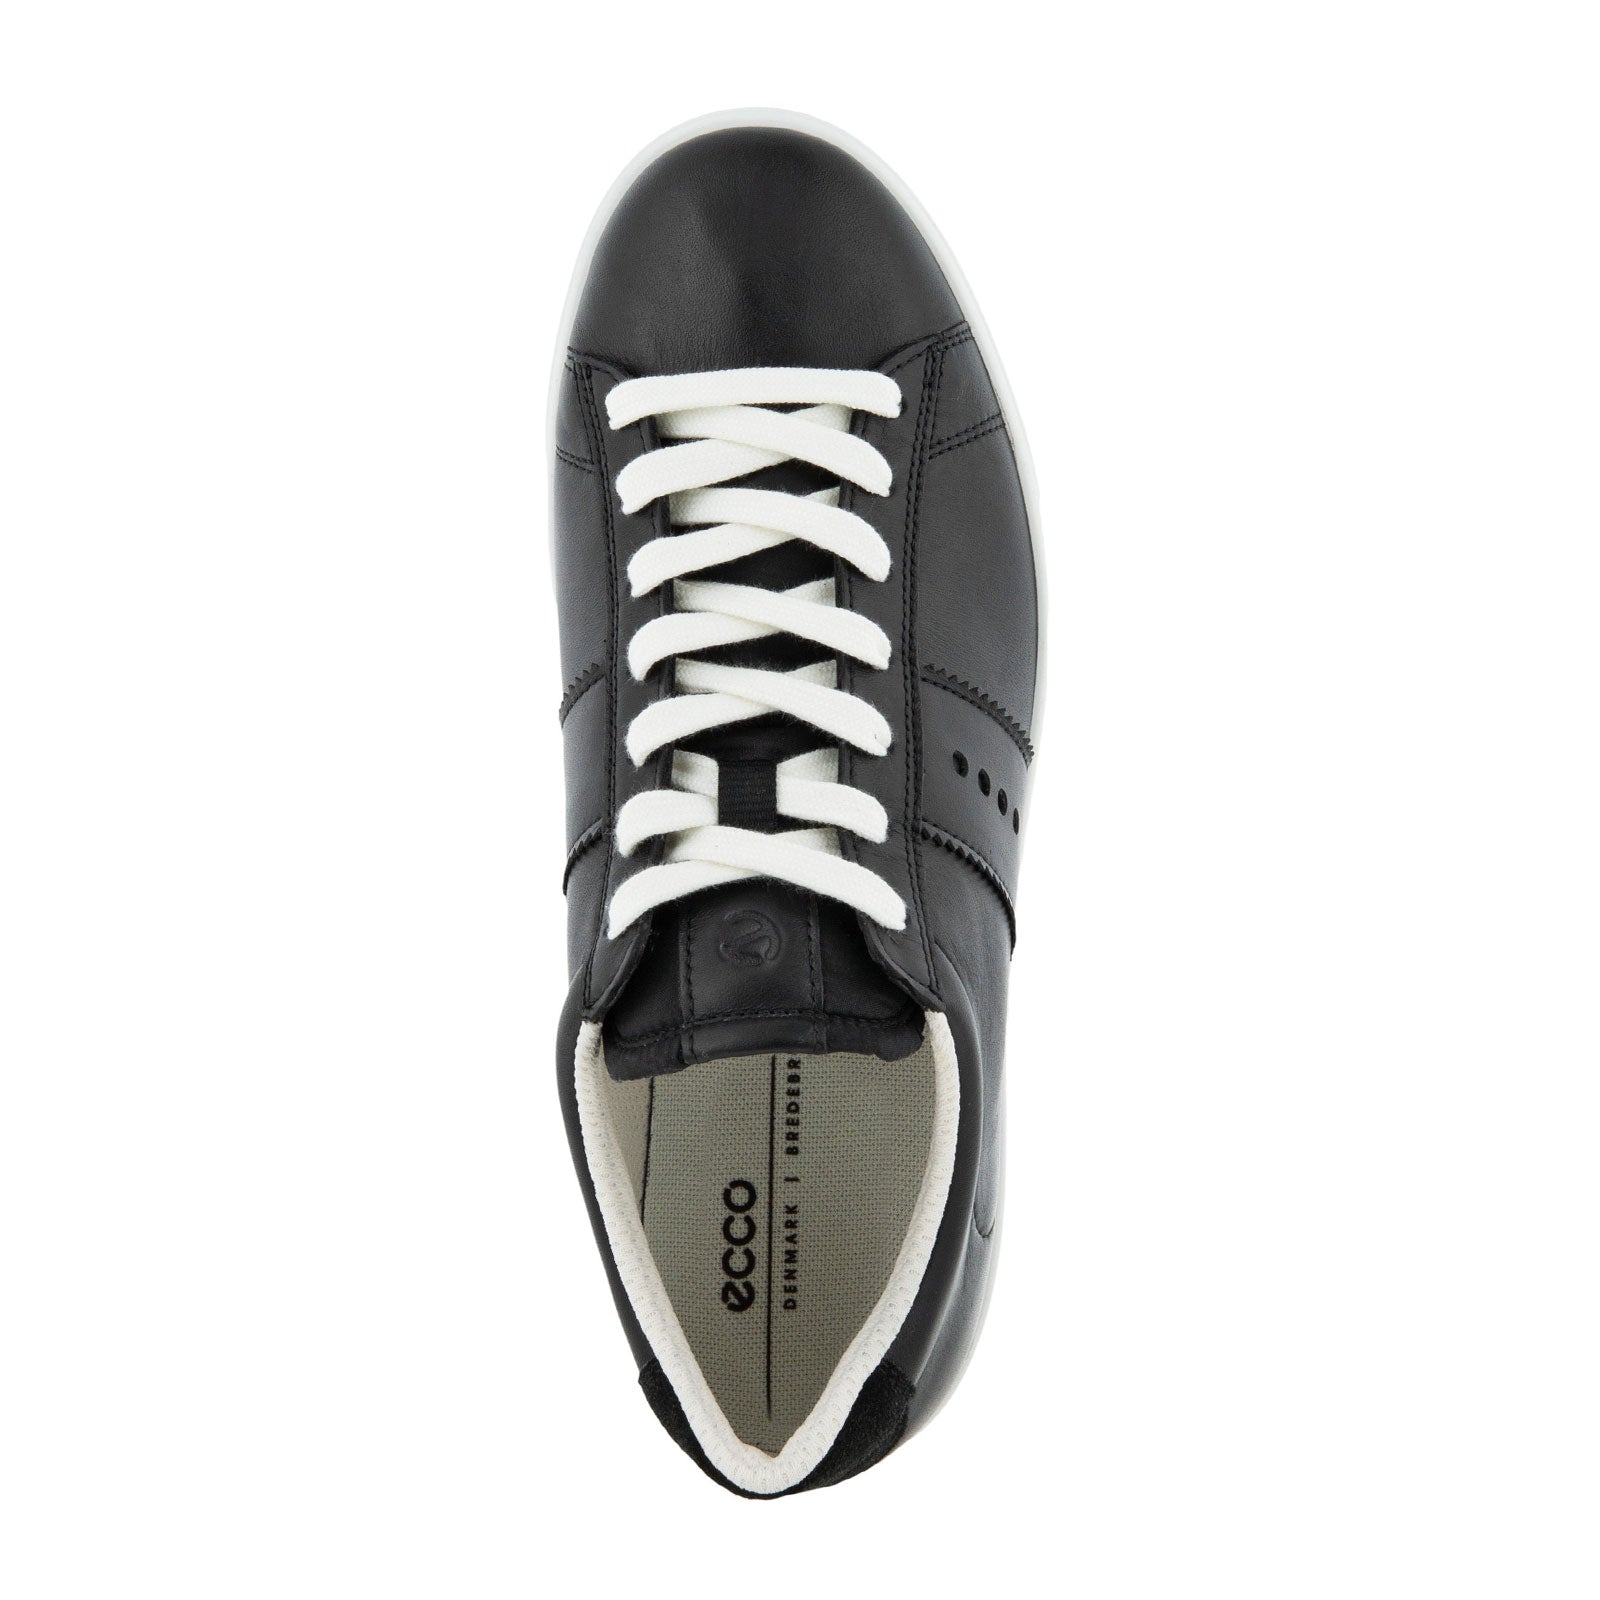 Lite W Retro Sneaker (Women) - Black/Black - The Heel Shoe